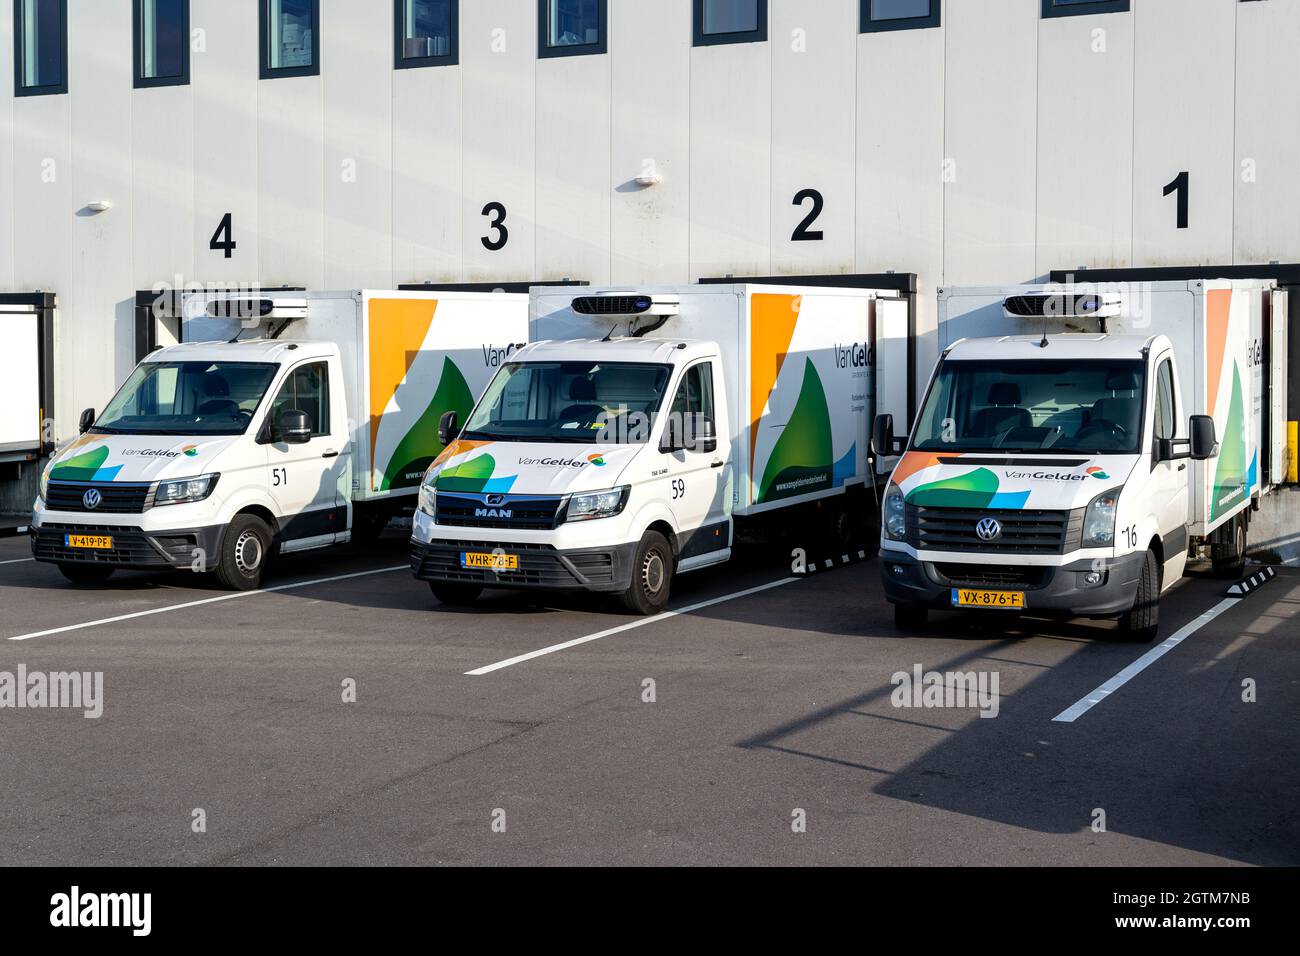 Van Gelder delivery vans at loading dock Stock Photo